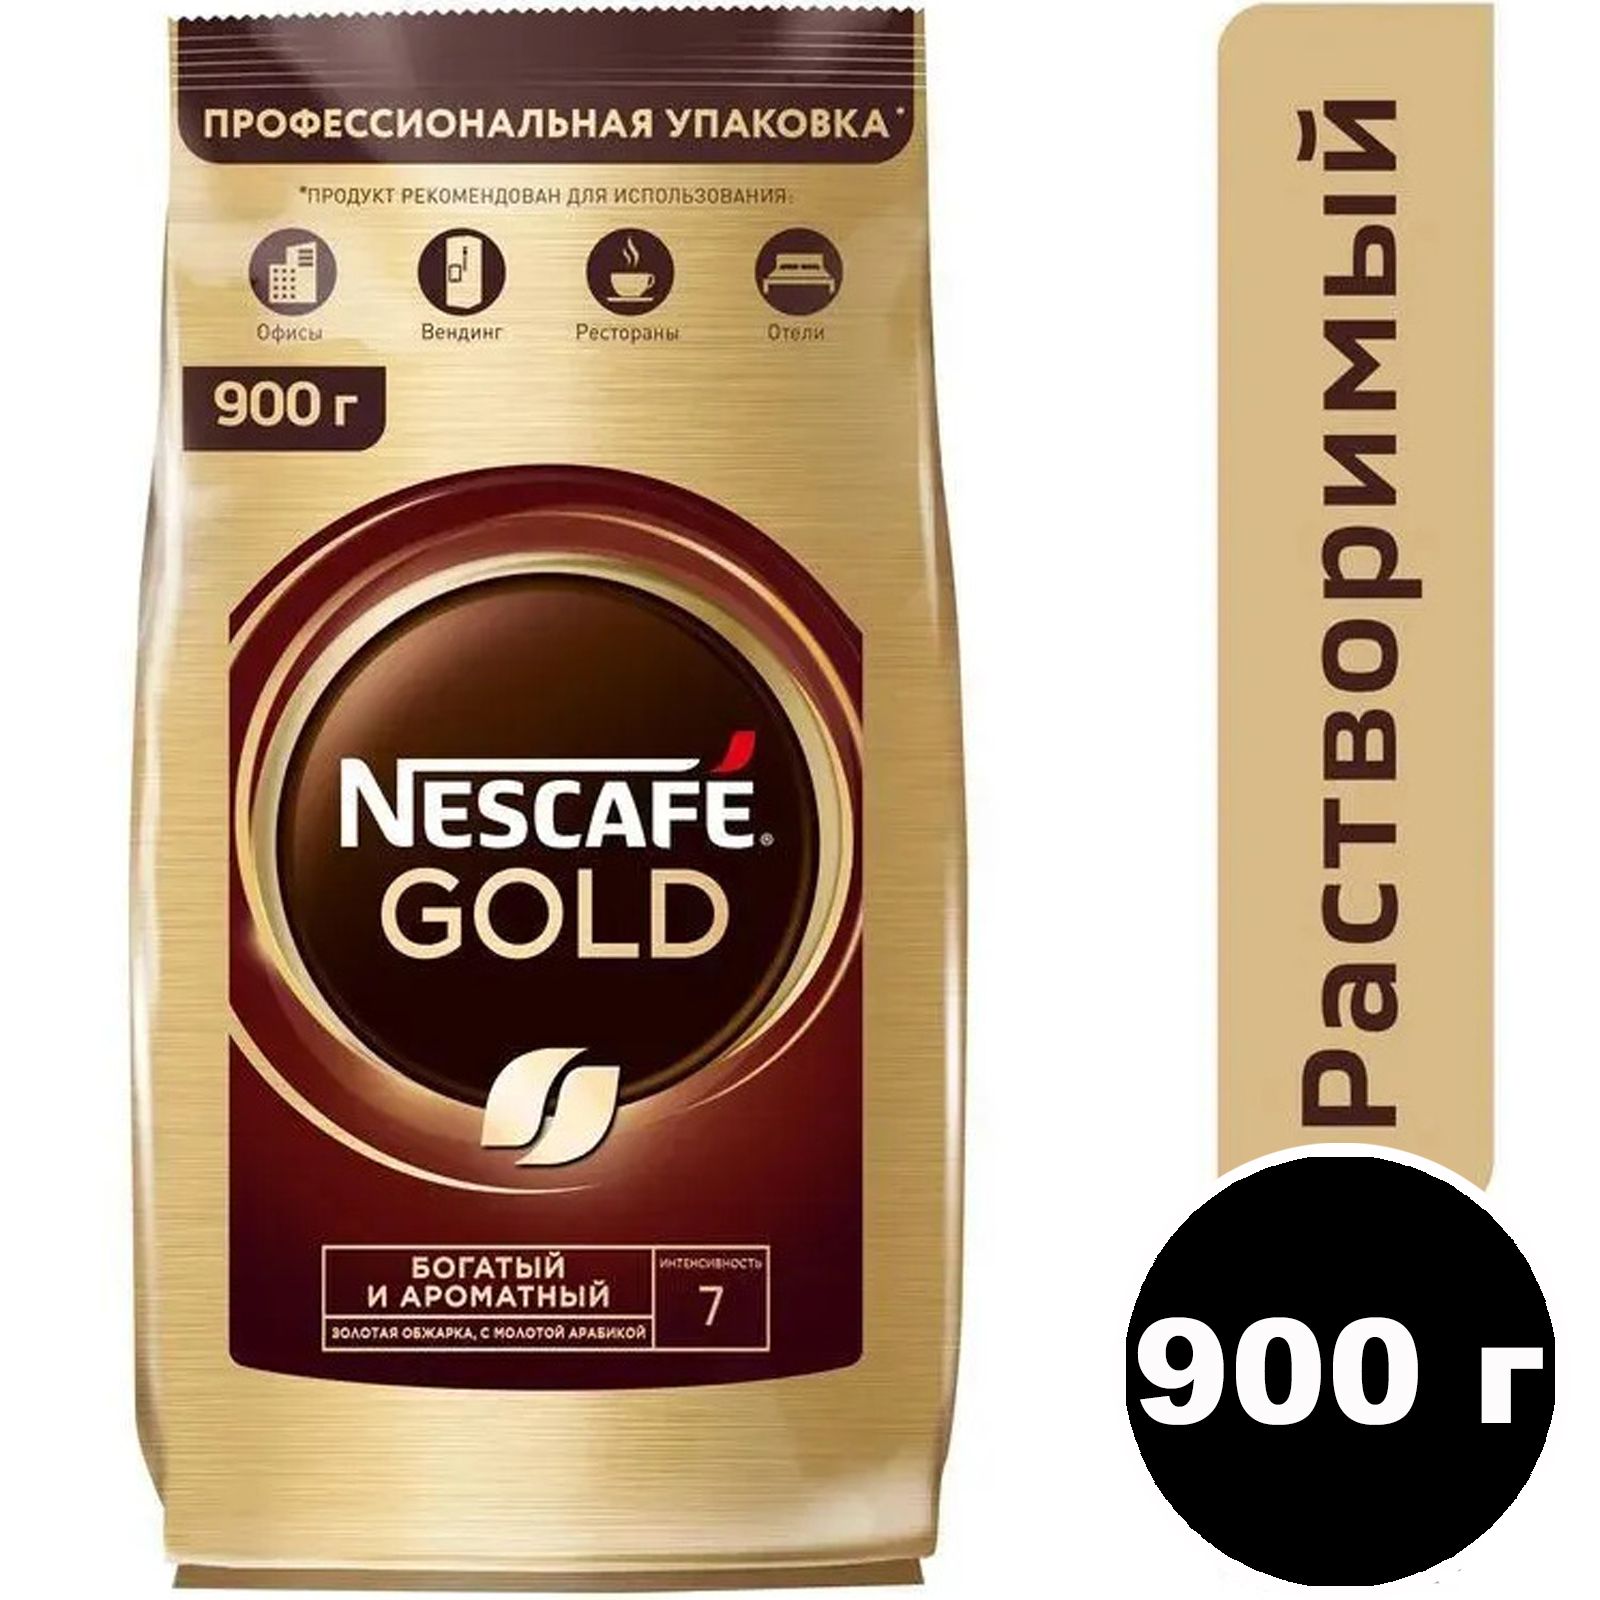 Nescafe gold молотый. Nescafe кофе Gold 900г.. Нескафе Голд 750 гр. Кофе Нескафе Голд 750 гр. Кофе растворимый Нескафе Голд 900 гр.